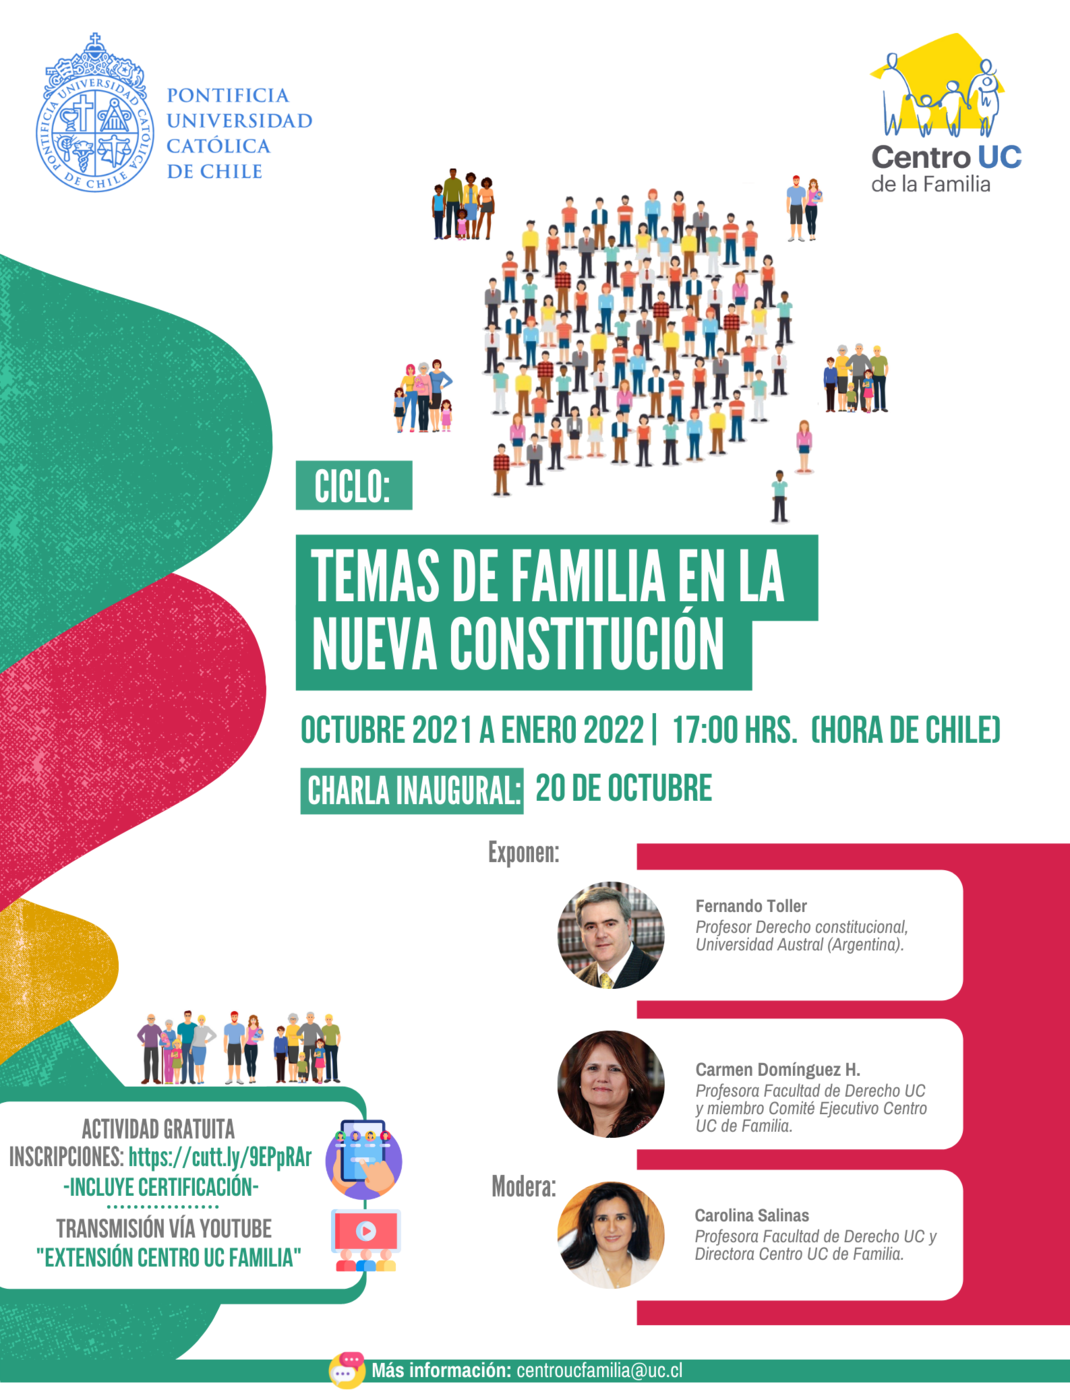 Universidad Católica invita a la charla “Temas de Familia en la nueva Constitución”